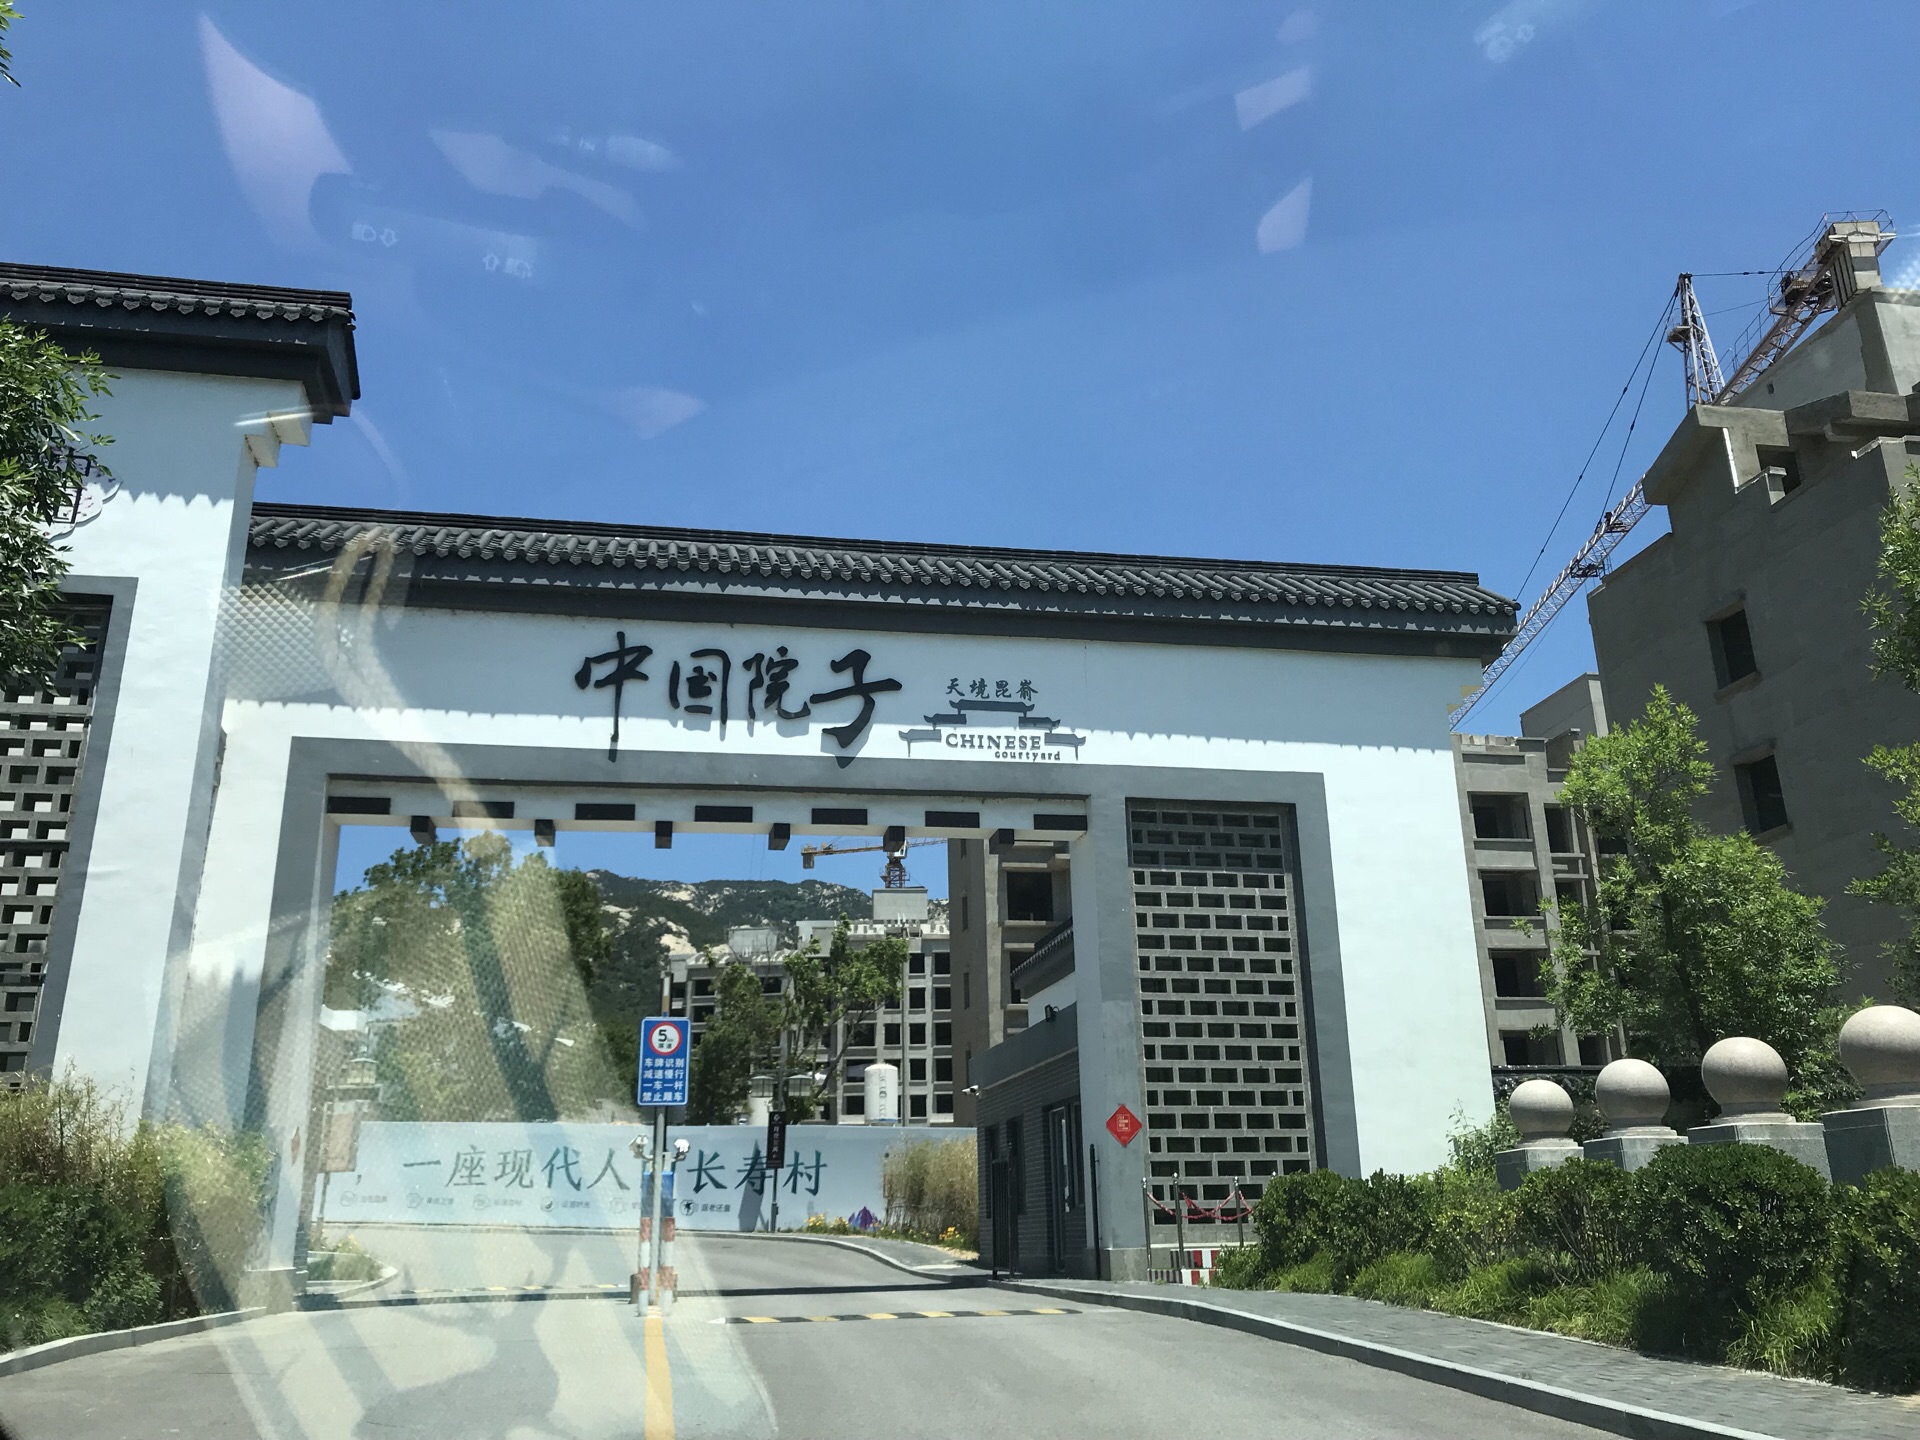 2022中国院子·百纳生态酒店(昆嵛山店)美食餐厅,在这里小住几天,很是